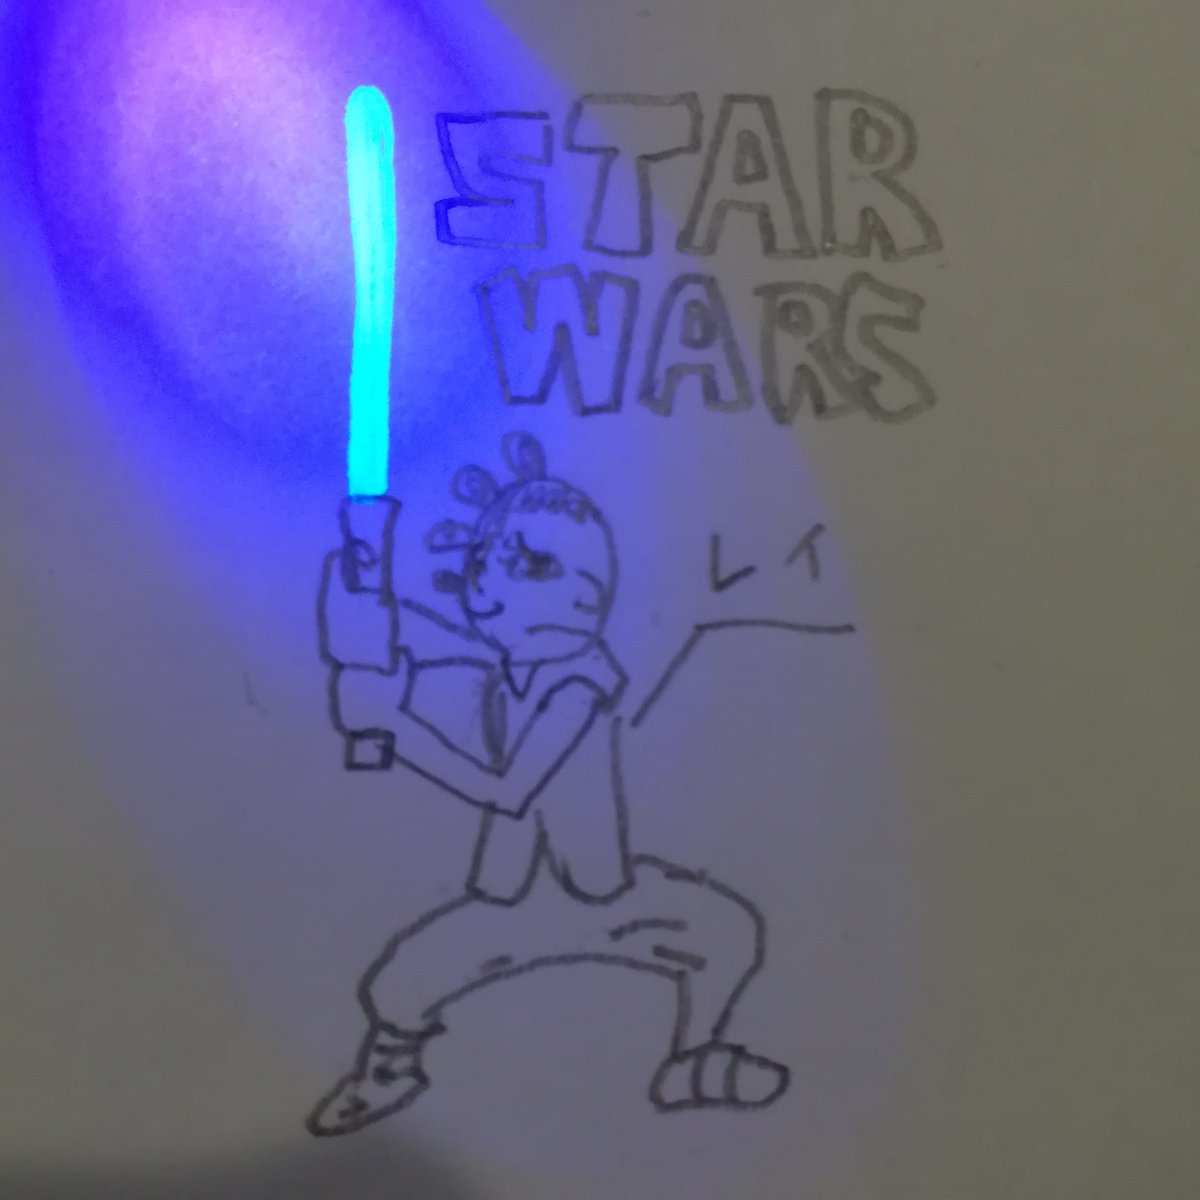 東岡シゴト Twitterren Star Warsのレイのイラスト ライトセーバーはブラックライトペンで書きました レイは信念があり強いから好き Starwars イラスト ブラックライトペン スパイペン